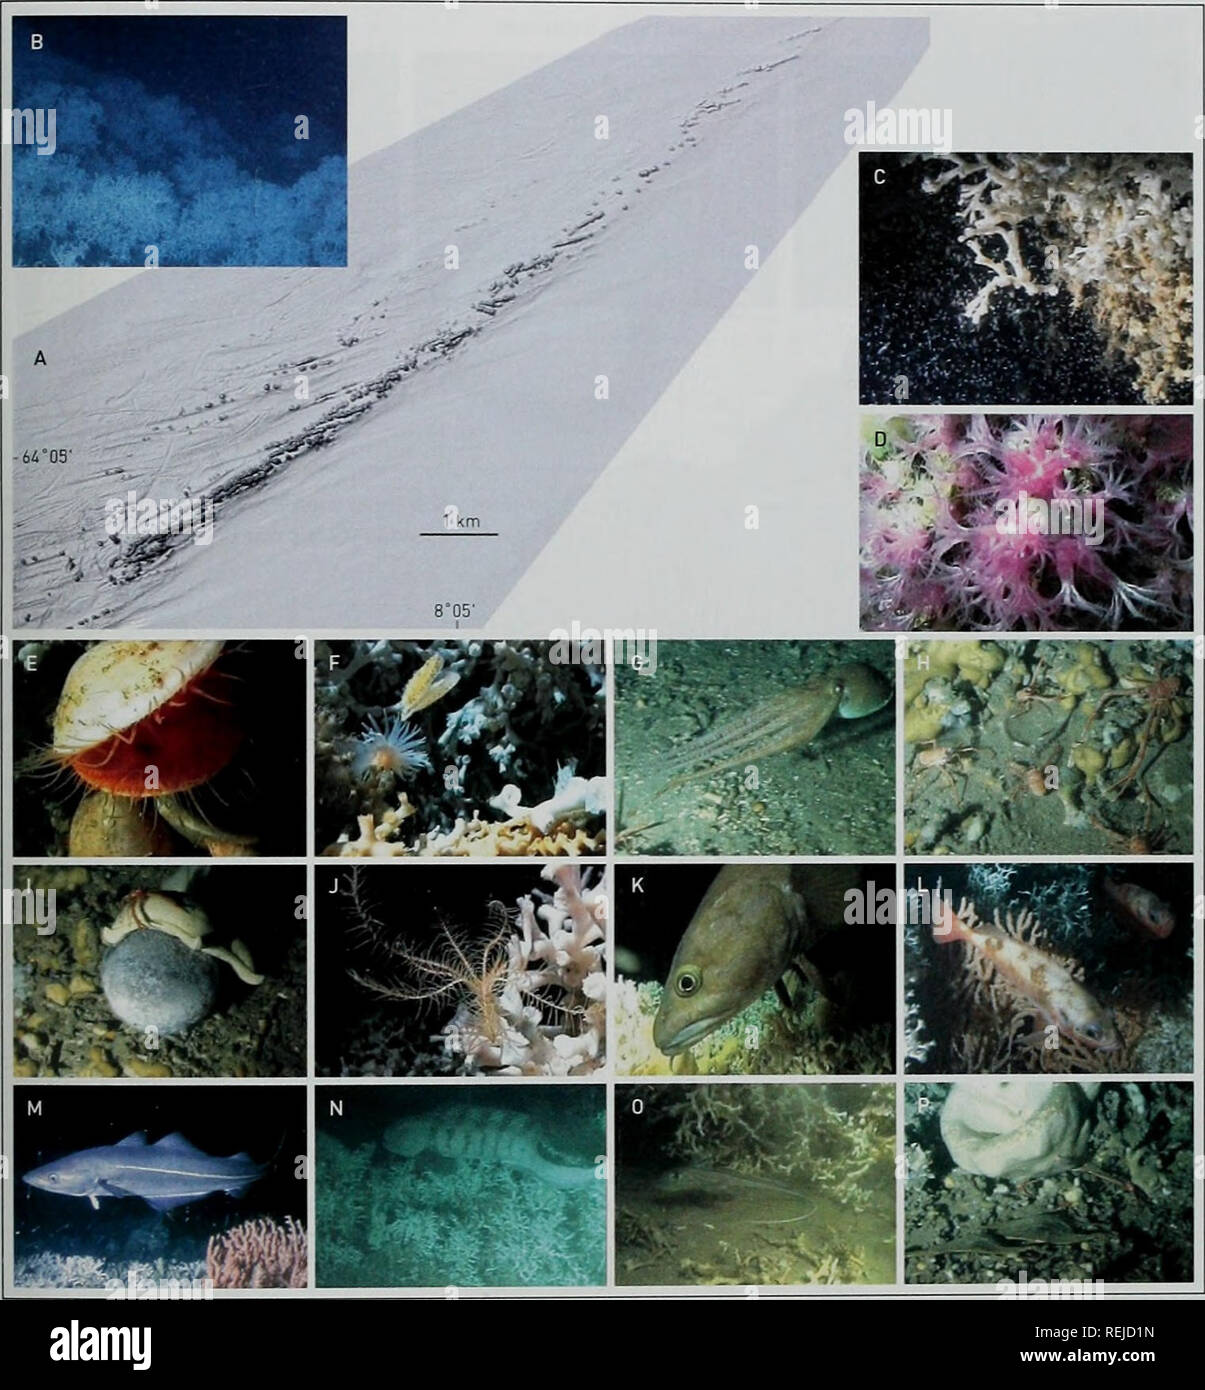 . Les récifs coralliens d'eau froide : loin des yeux - n'est plus hors de l'esprit. La diversité biologique du PNUE-WCMC Série 22. Les récifs coralliens d'eau froide. Figure 7 : Le Sula Reef. (A) l'ombre de la carte multifaisceaux Sula Reef. Les taches sombres marque les différents récifs superposée à la mise à la terre des linéations créé par certains icebergs il y a des milliers d'années. (Bl une galerie de Lophelia sur le haut du récif. (C) Le zooplancton est une importante source de nourriture pour les coraux. (D) Anthothela grandiflora (octocoral). IE) ^cesfa excavata, le plus grand récif de la palourde. Si) qui s'échappent, Chlamys sulcata avec Protanthea simplex (Actinaria). (G) qui s'échappent du poulpe. (H) Assemb Banque D'Images